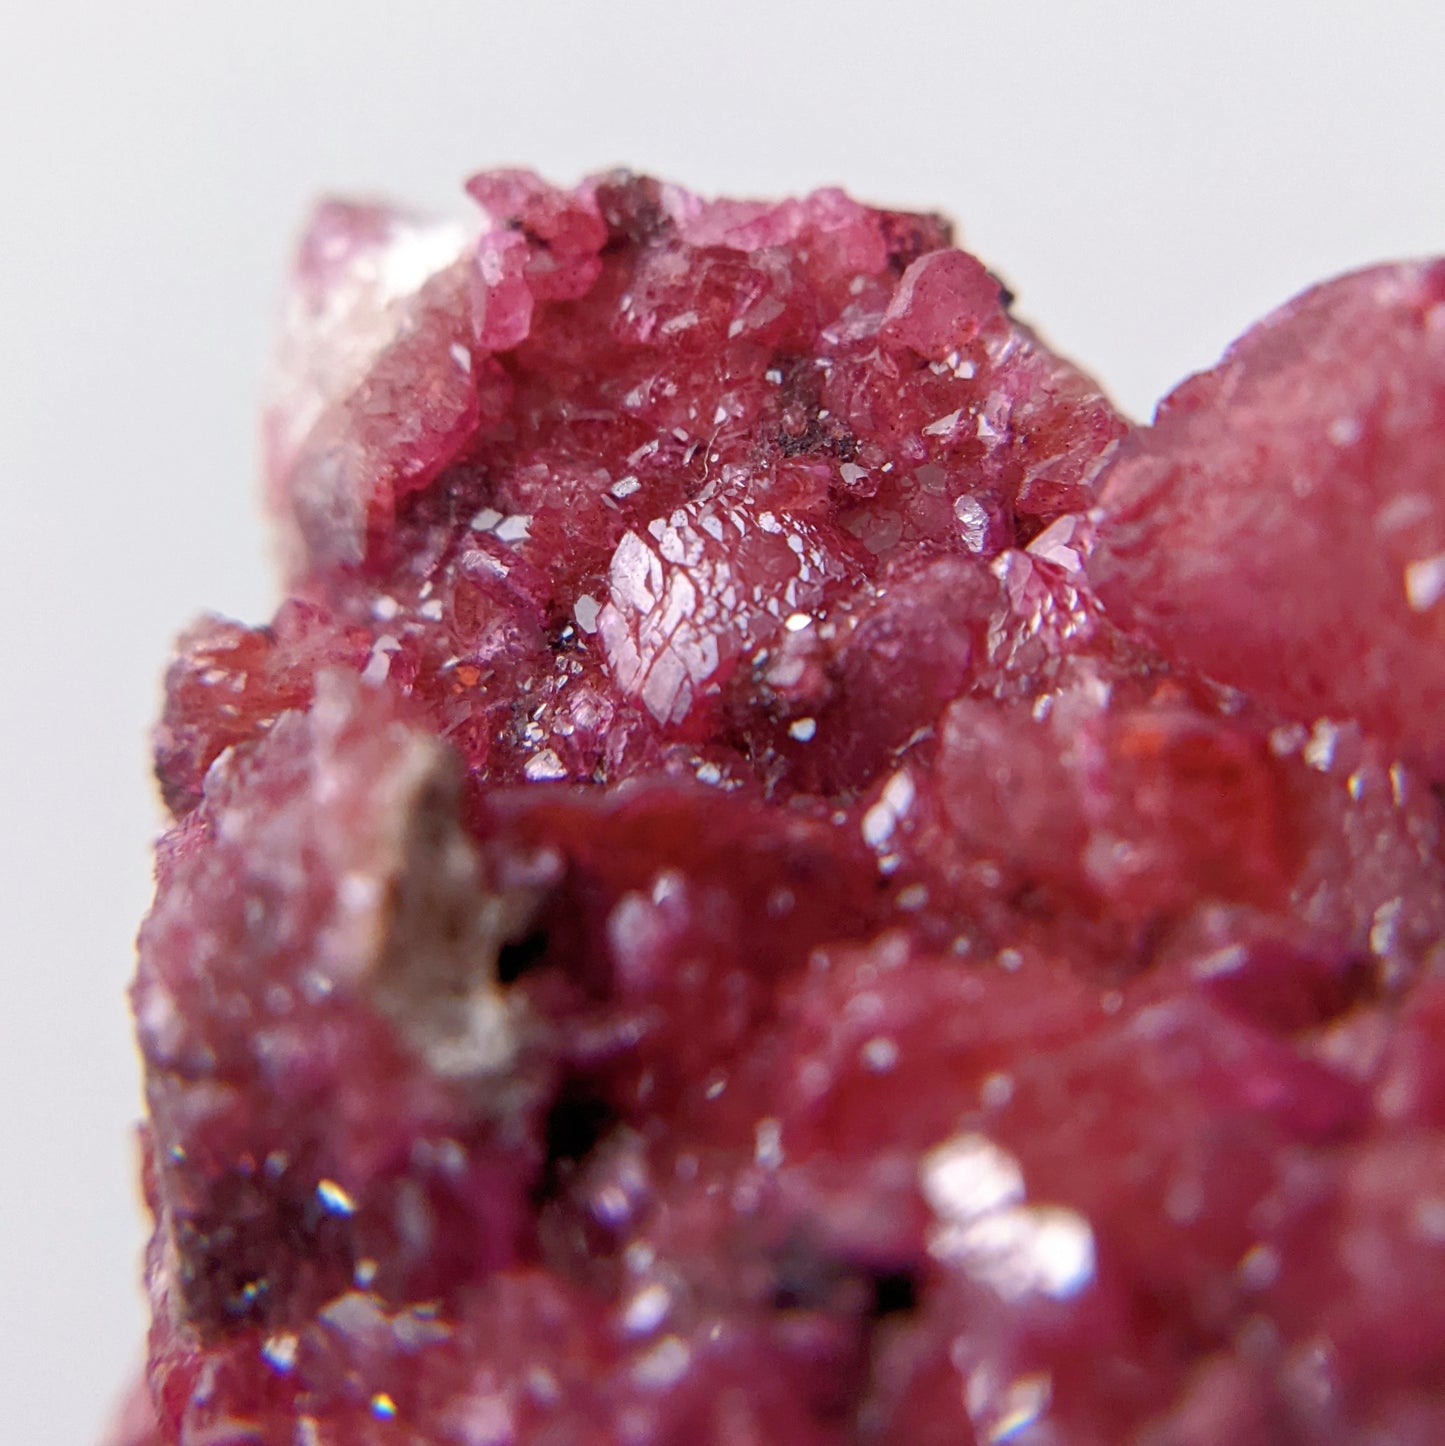 [CC02] Burgundy Cobaltocalcite with Malachite and Calcite, Congo